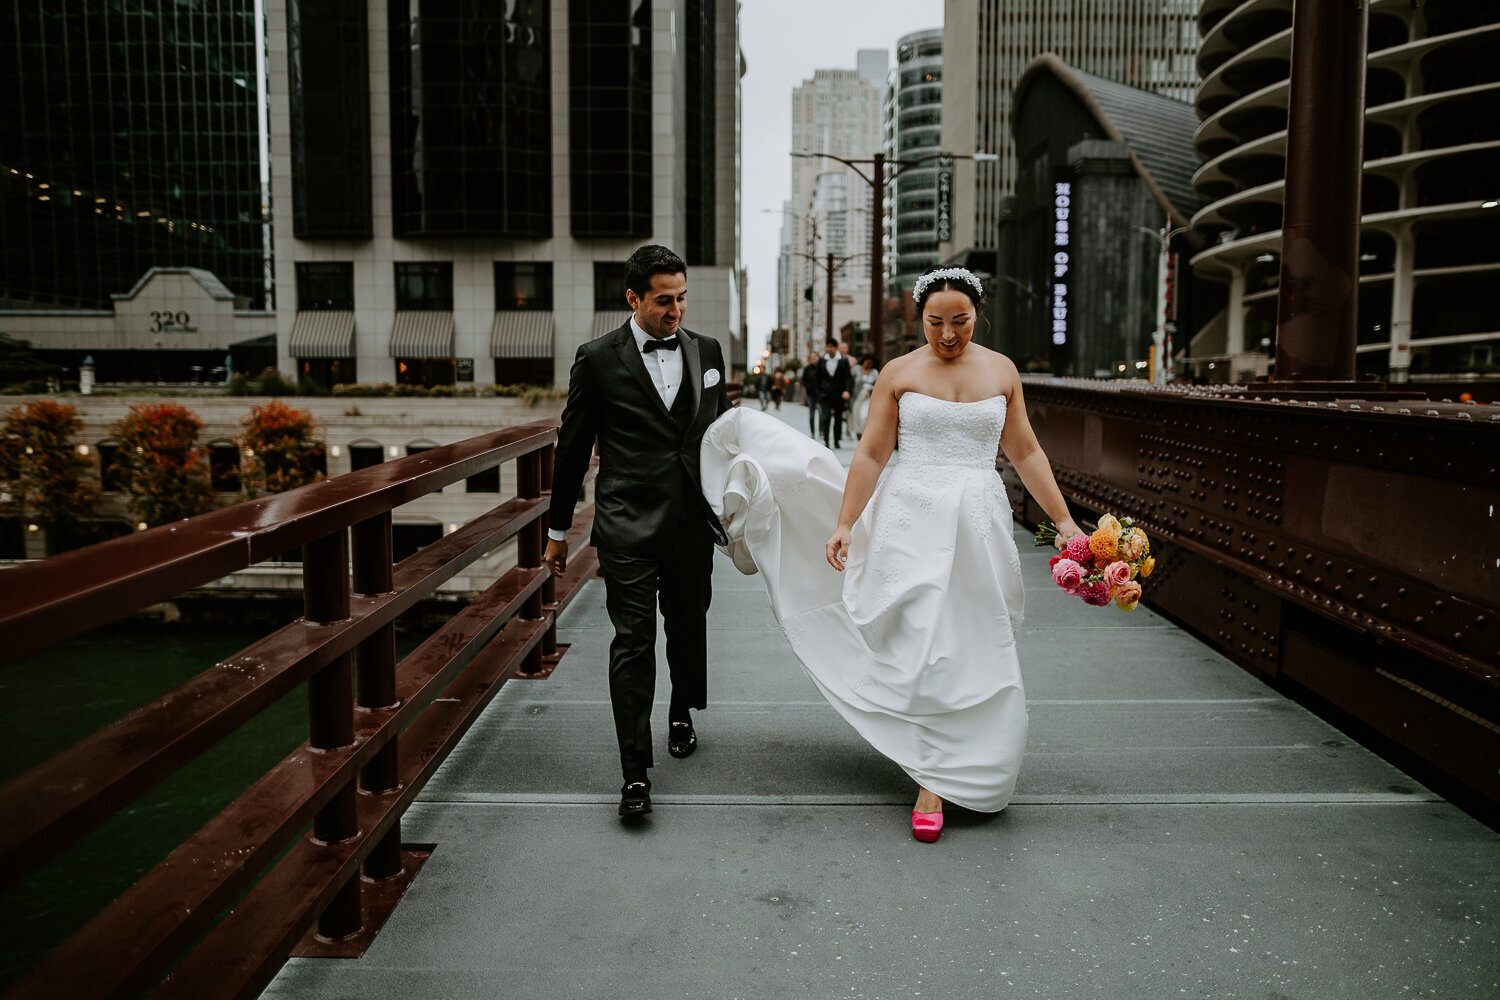 Wedding couple walking along Chicago bridge.